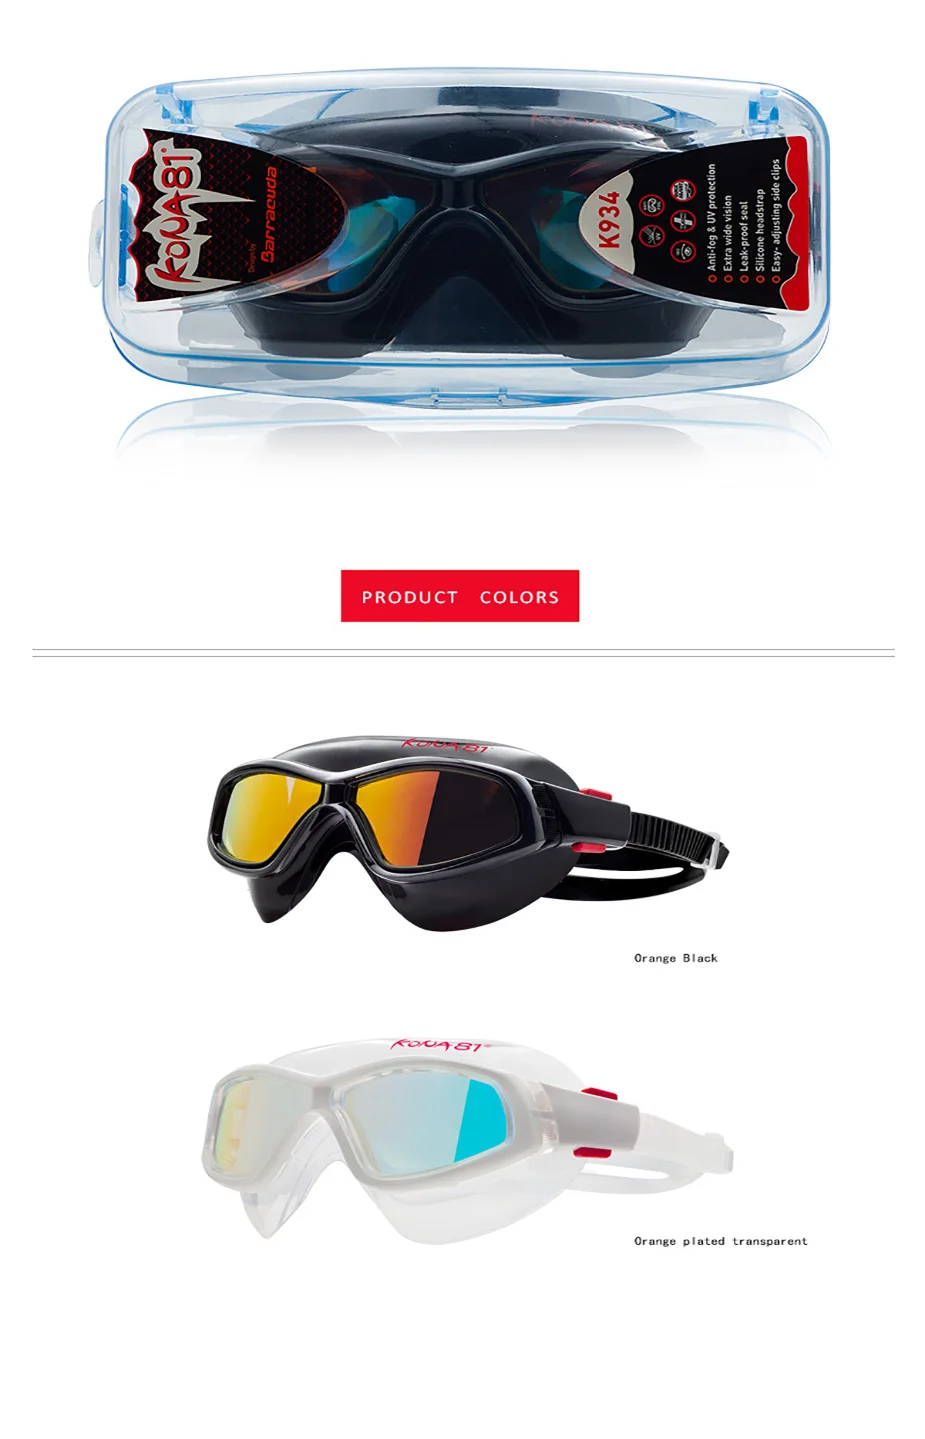 Barracuda KONA81 очки для плавания K934 зеркальные изогнутые линзы противотуманные УФ-Защита Триатлон для взрослых#93410